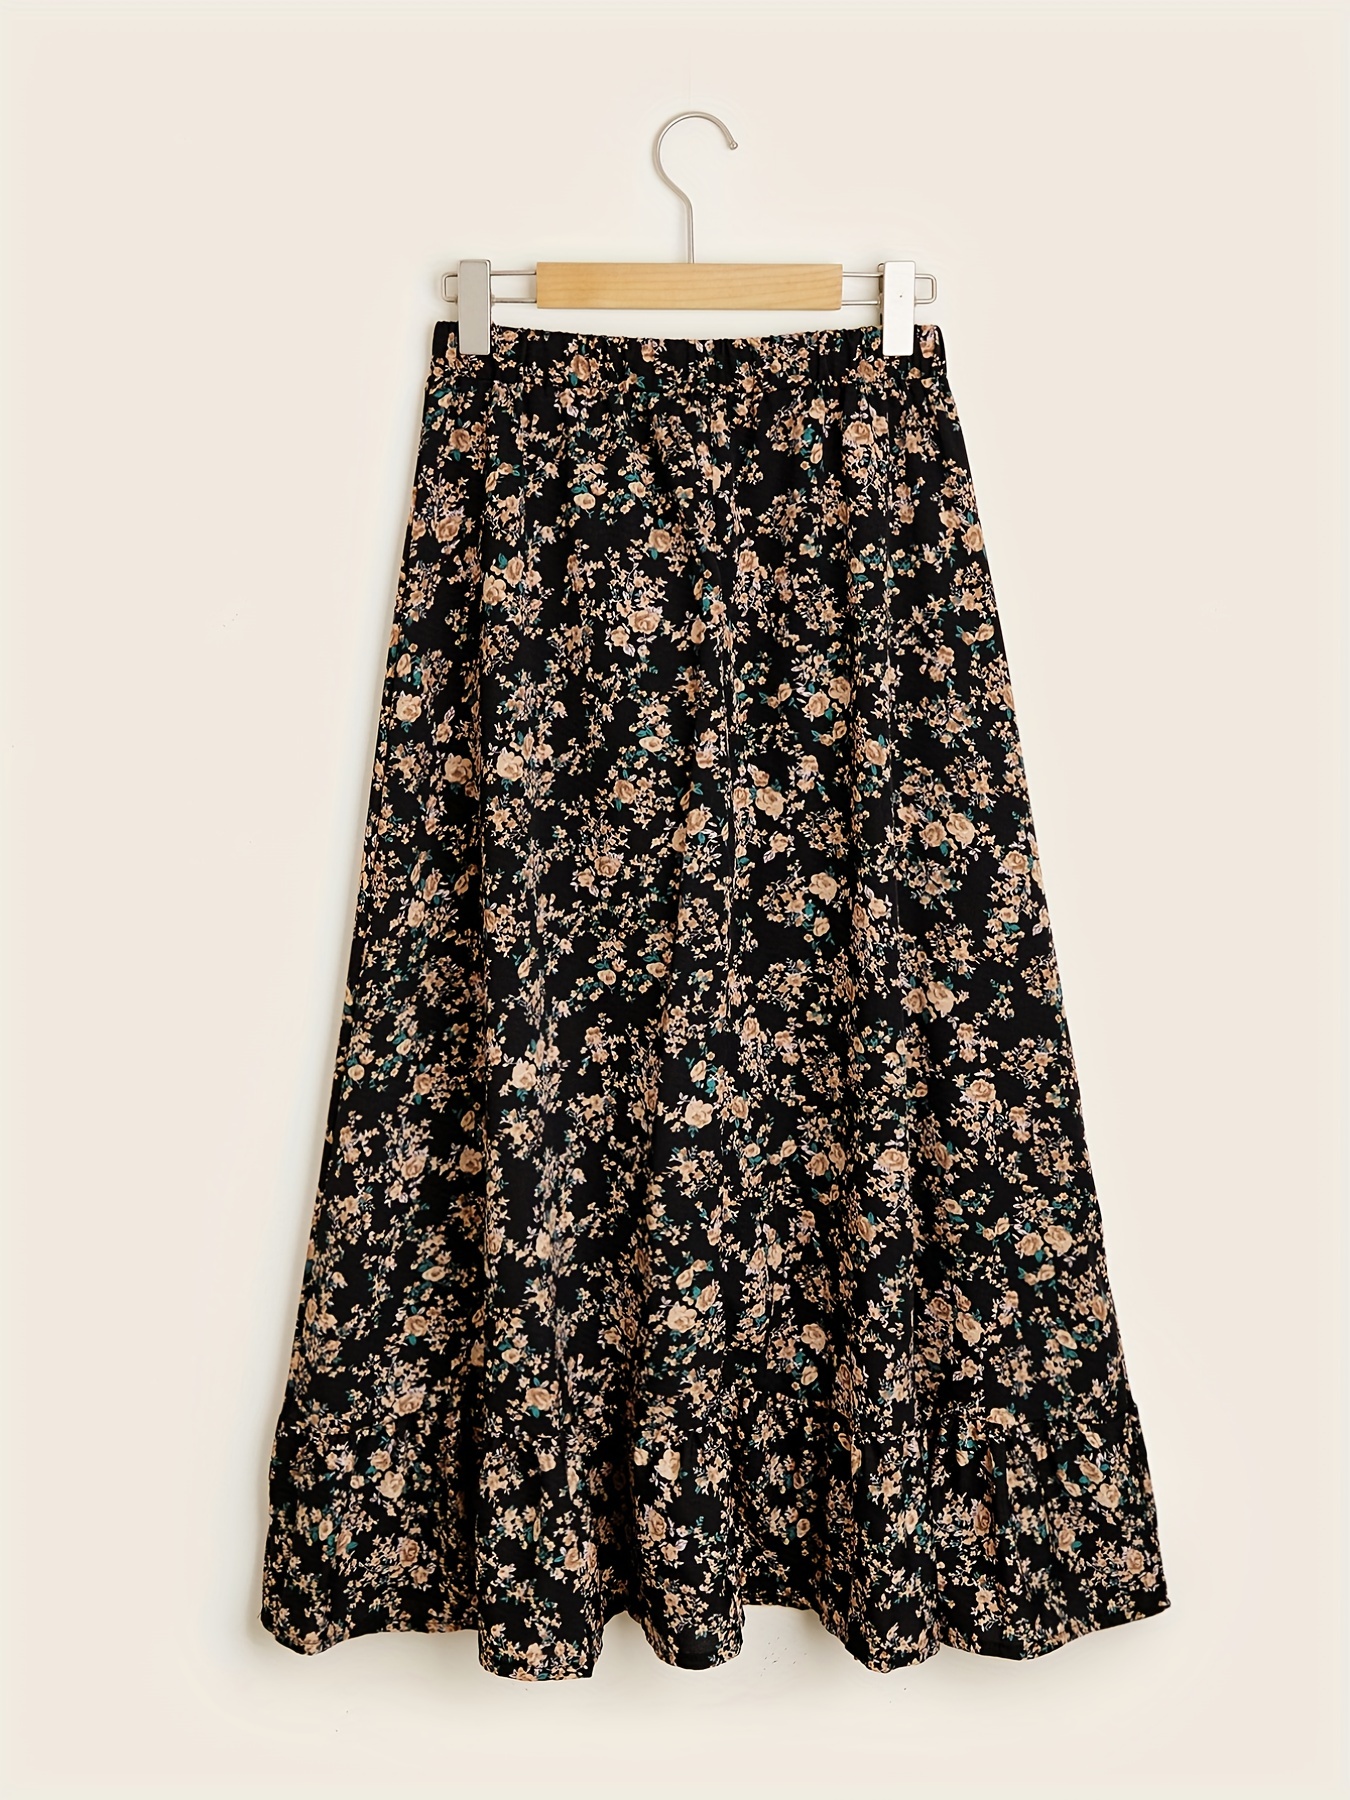 Ruffle Trim Tiered Skirt Elegant Elastic Waist Layered Skirt - Temu